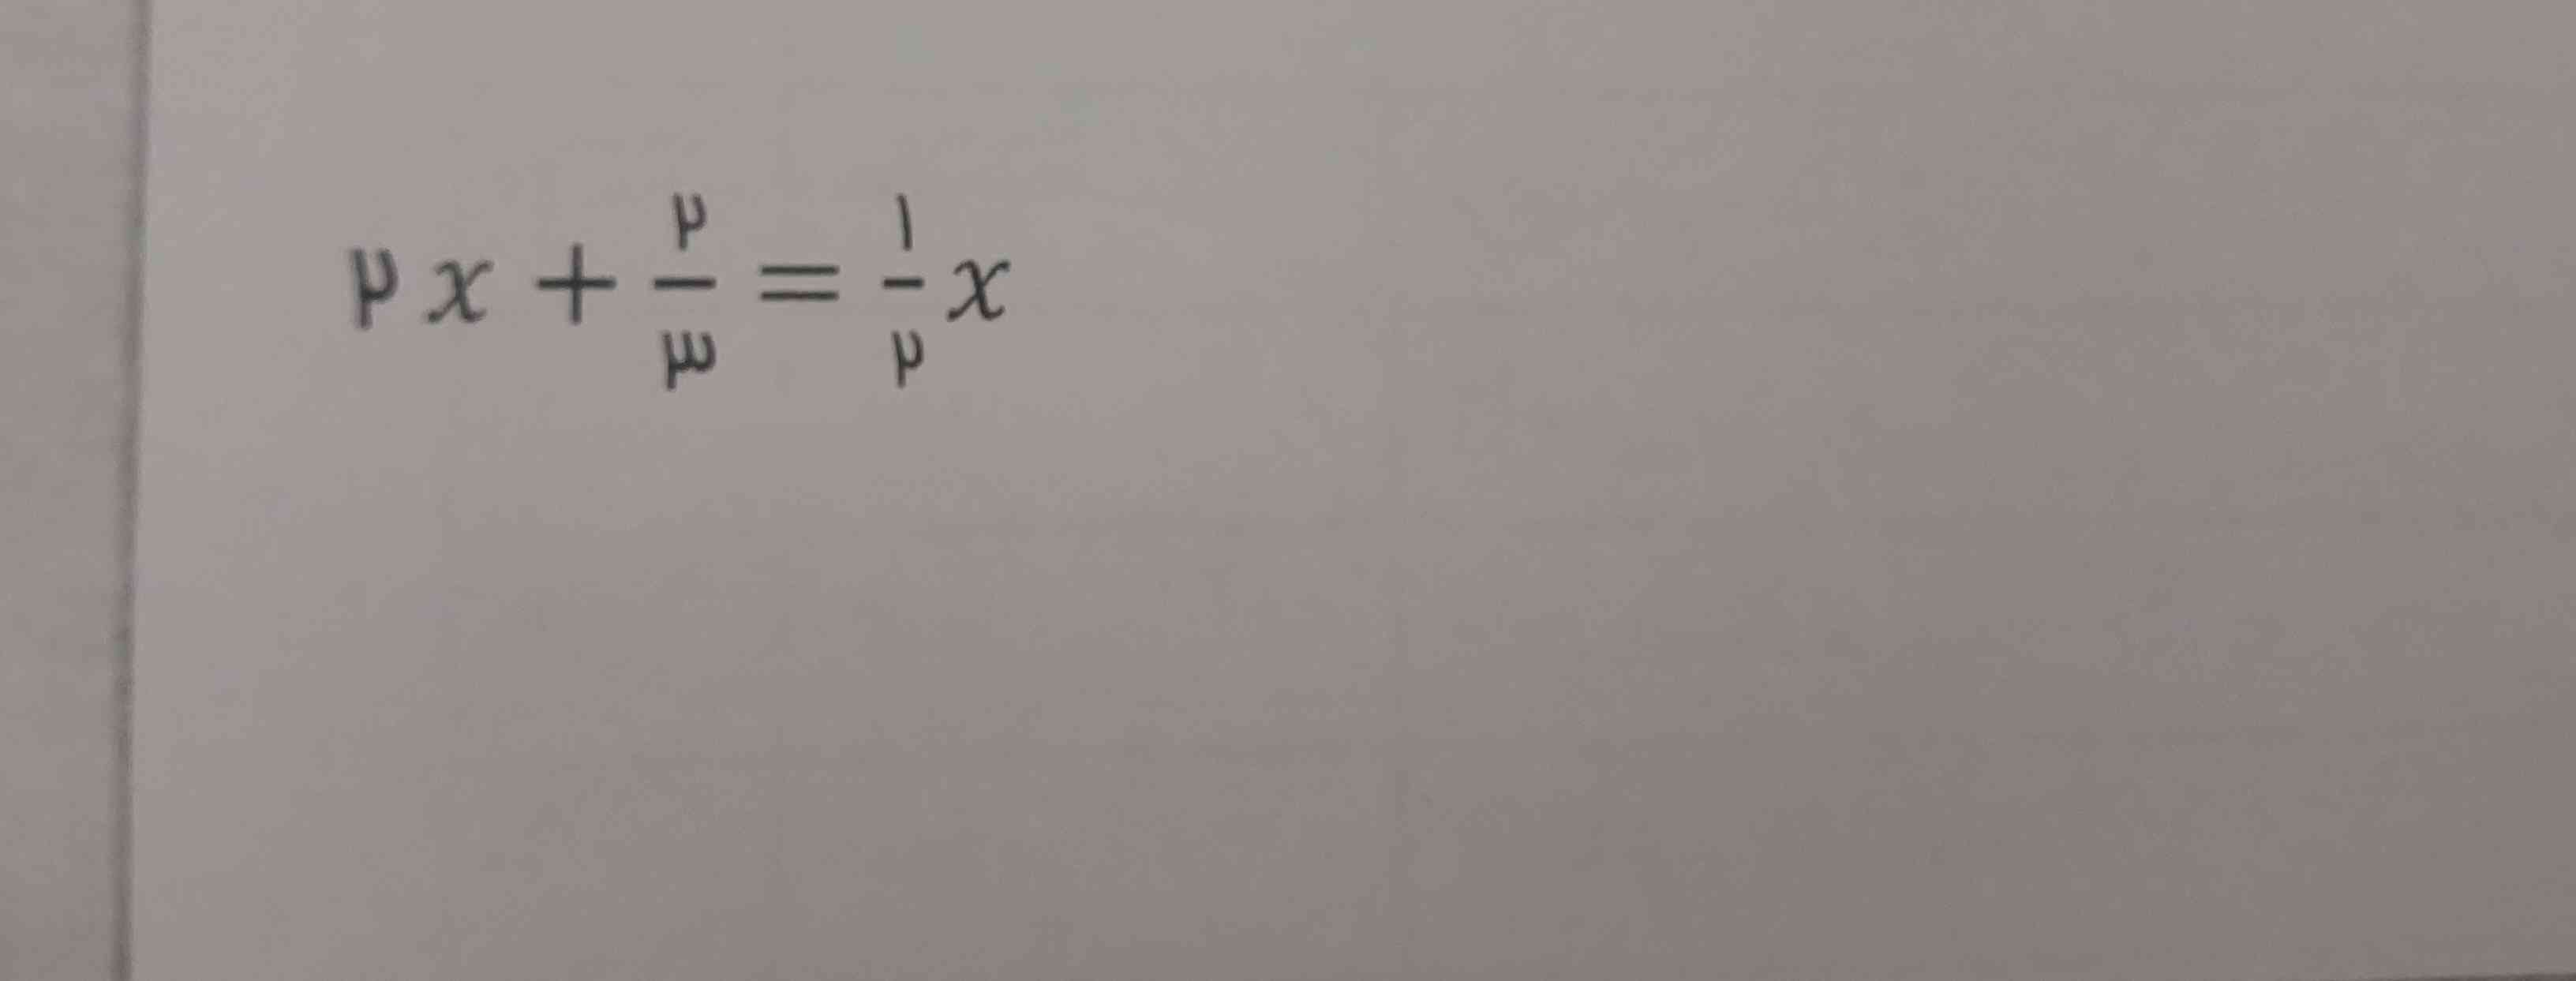 جواب این معادلرو به دست بیارید با توضیح(تاج میدم)